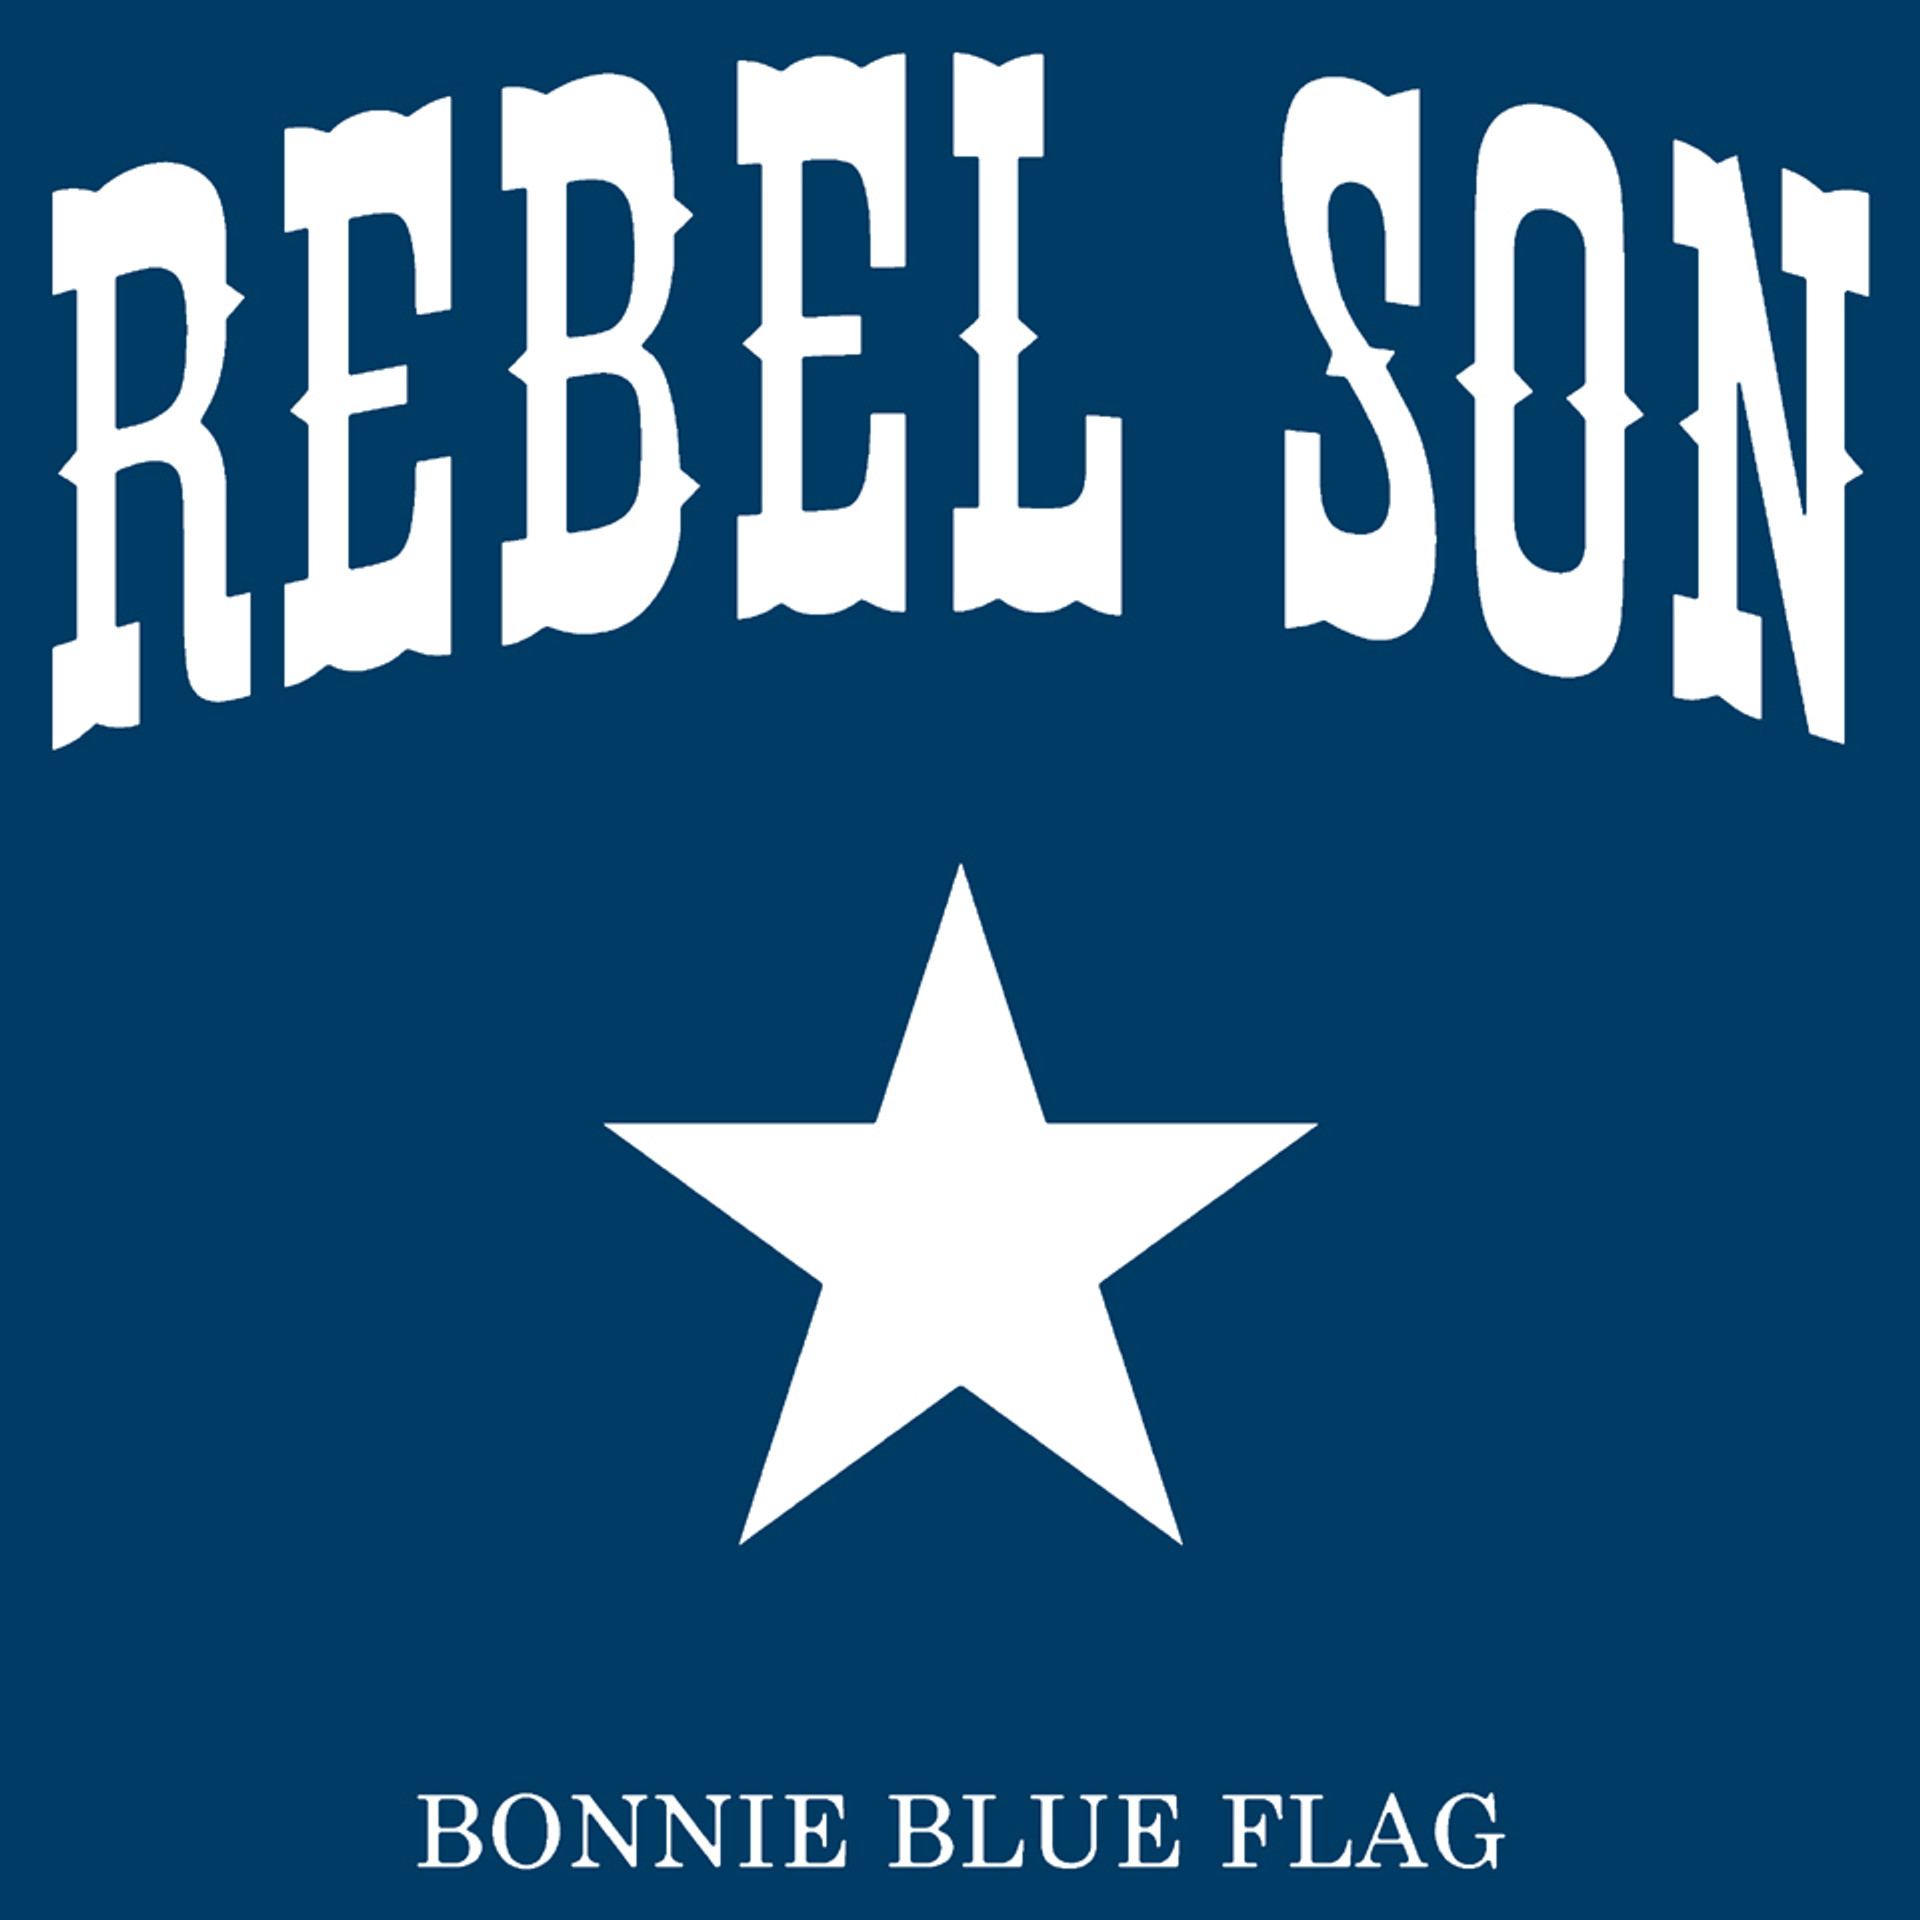 Bonnie blu. Бонни Блю флаг. Бонни голубой флаг. Флаг Bonnie Blue. Бонни синий флаг.